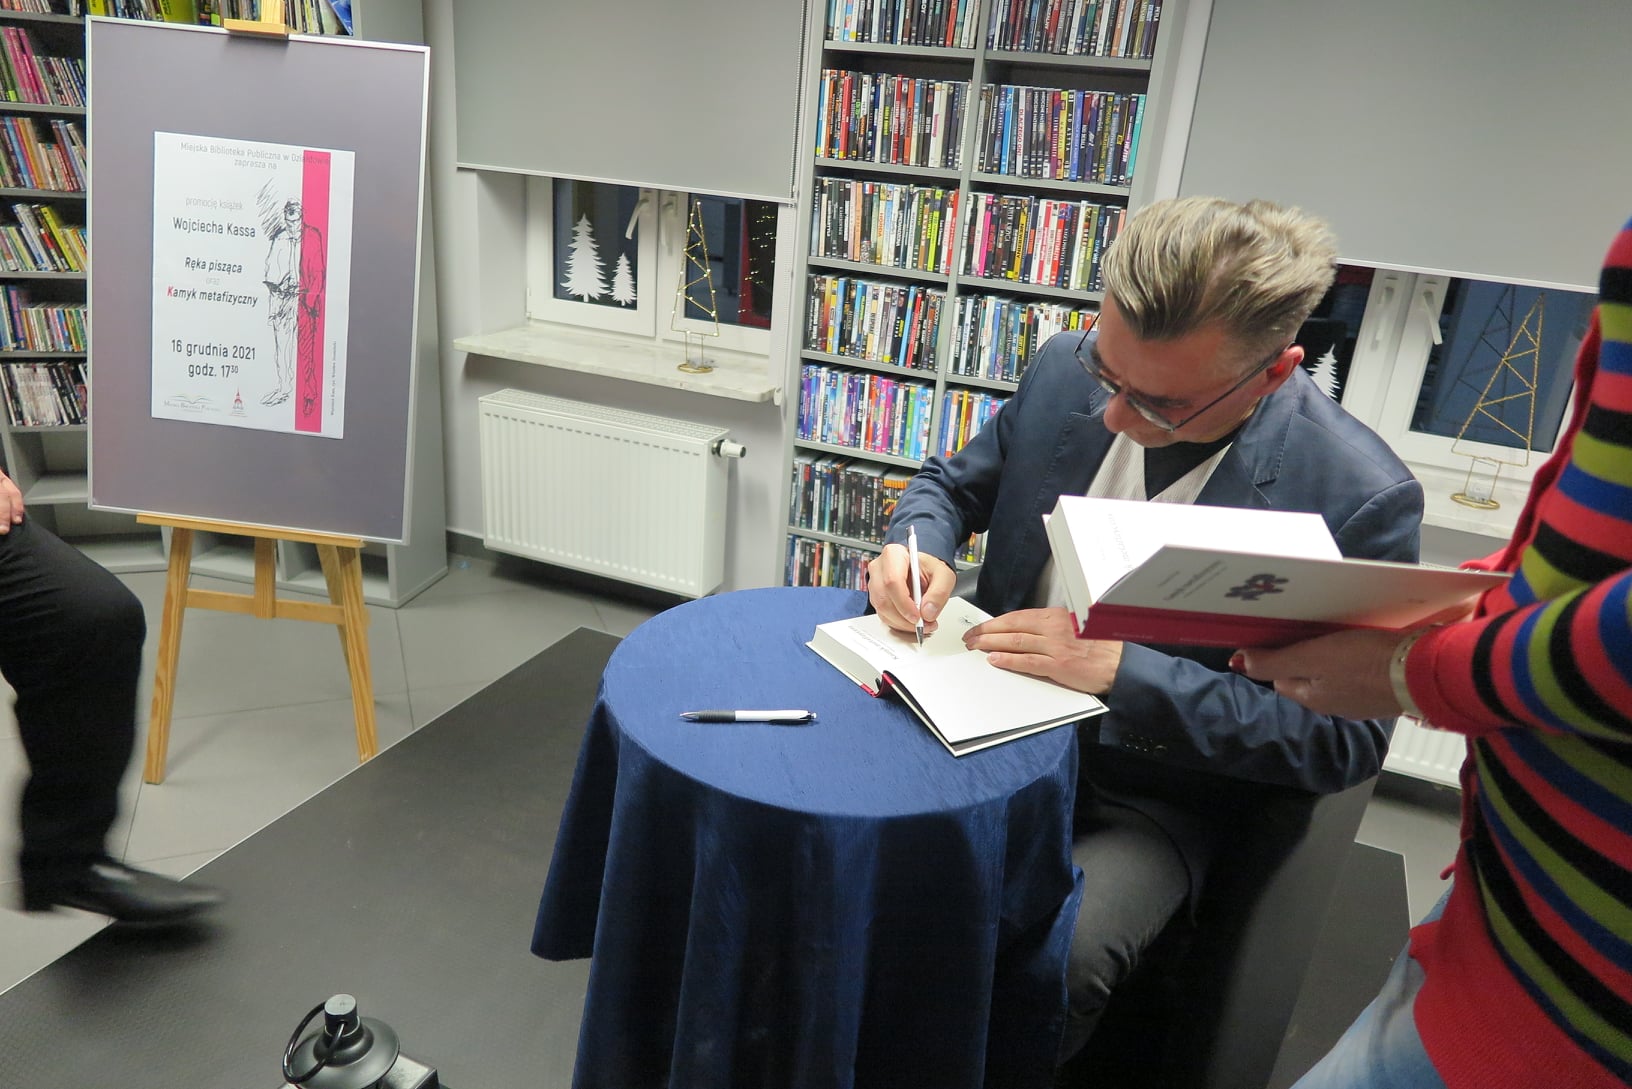 Wojciech Kass siedzi w fotelu przy okrągłym stoliku i podpisuje Publiczności egzemplarze książki